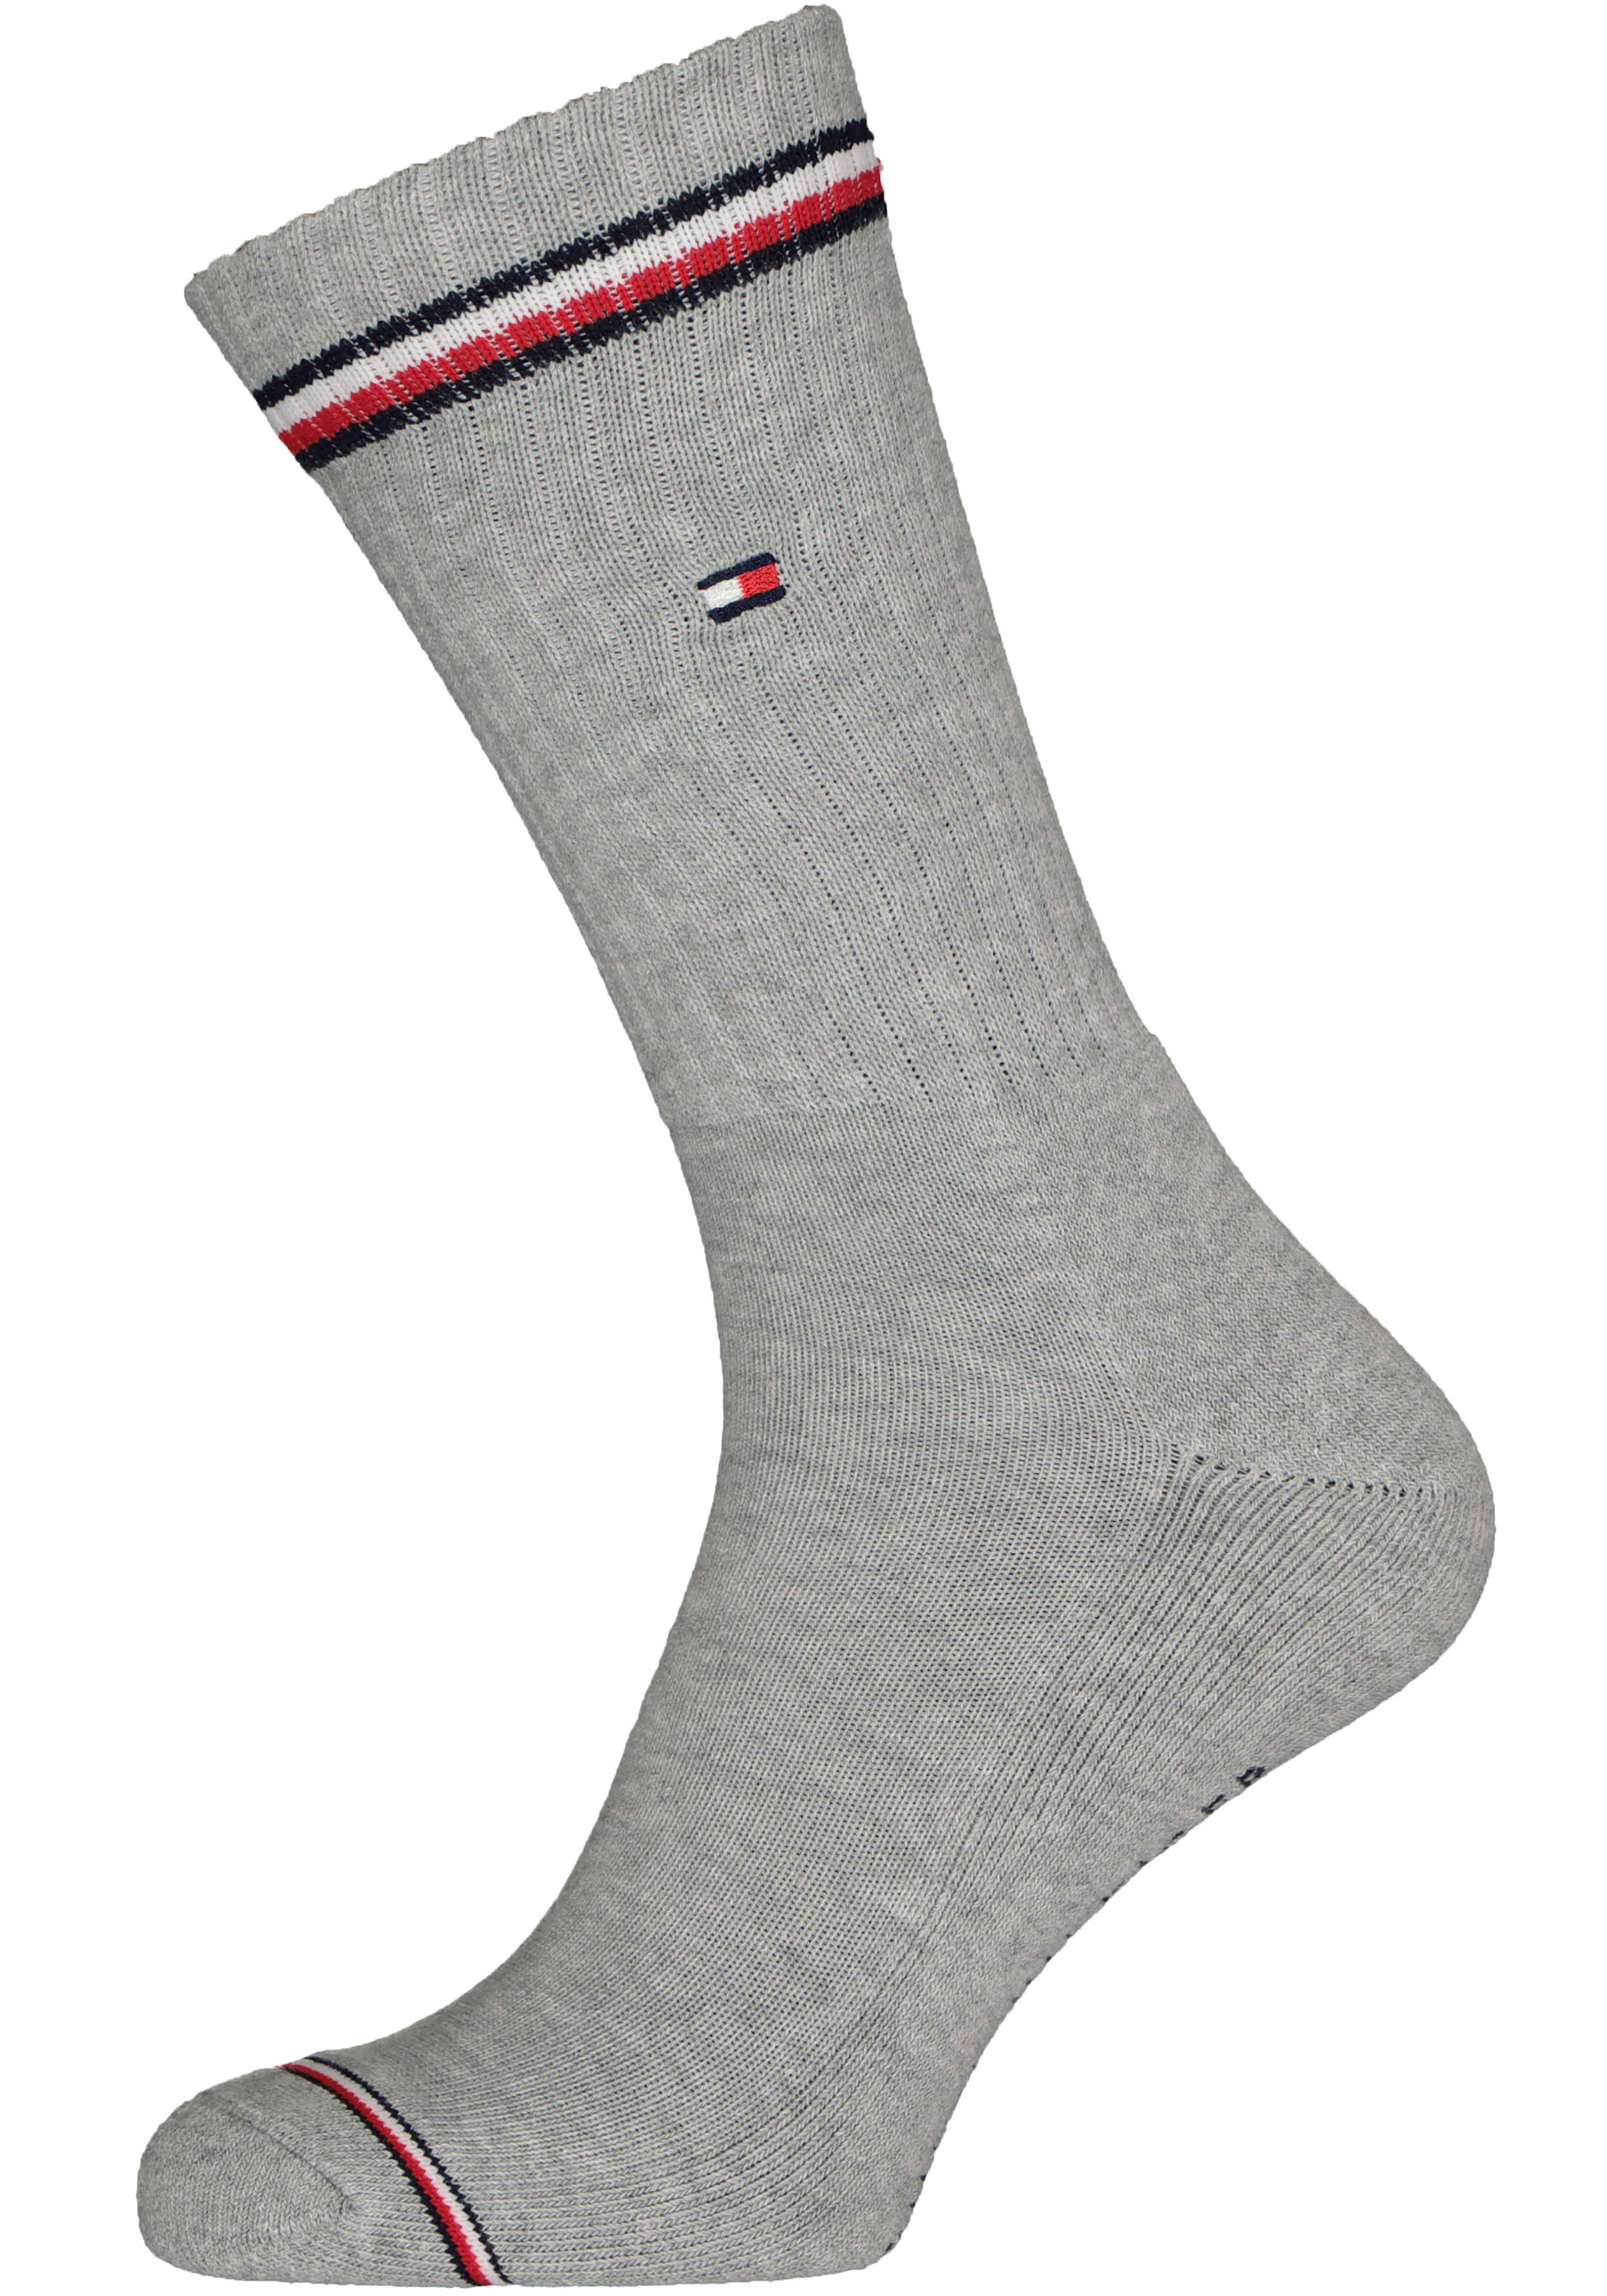 De waarheid vertellen ik ben gelukkig wrijving Tommy Hilfiger Iconic Sport Socks (2-pack), heren sportsokken katoen, grijs  - Zomer SALE tot 50% korting